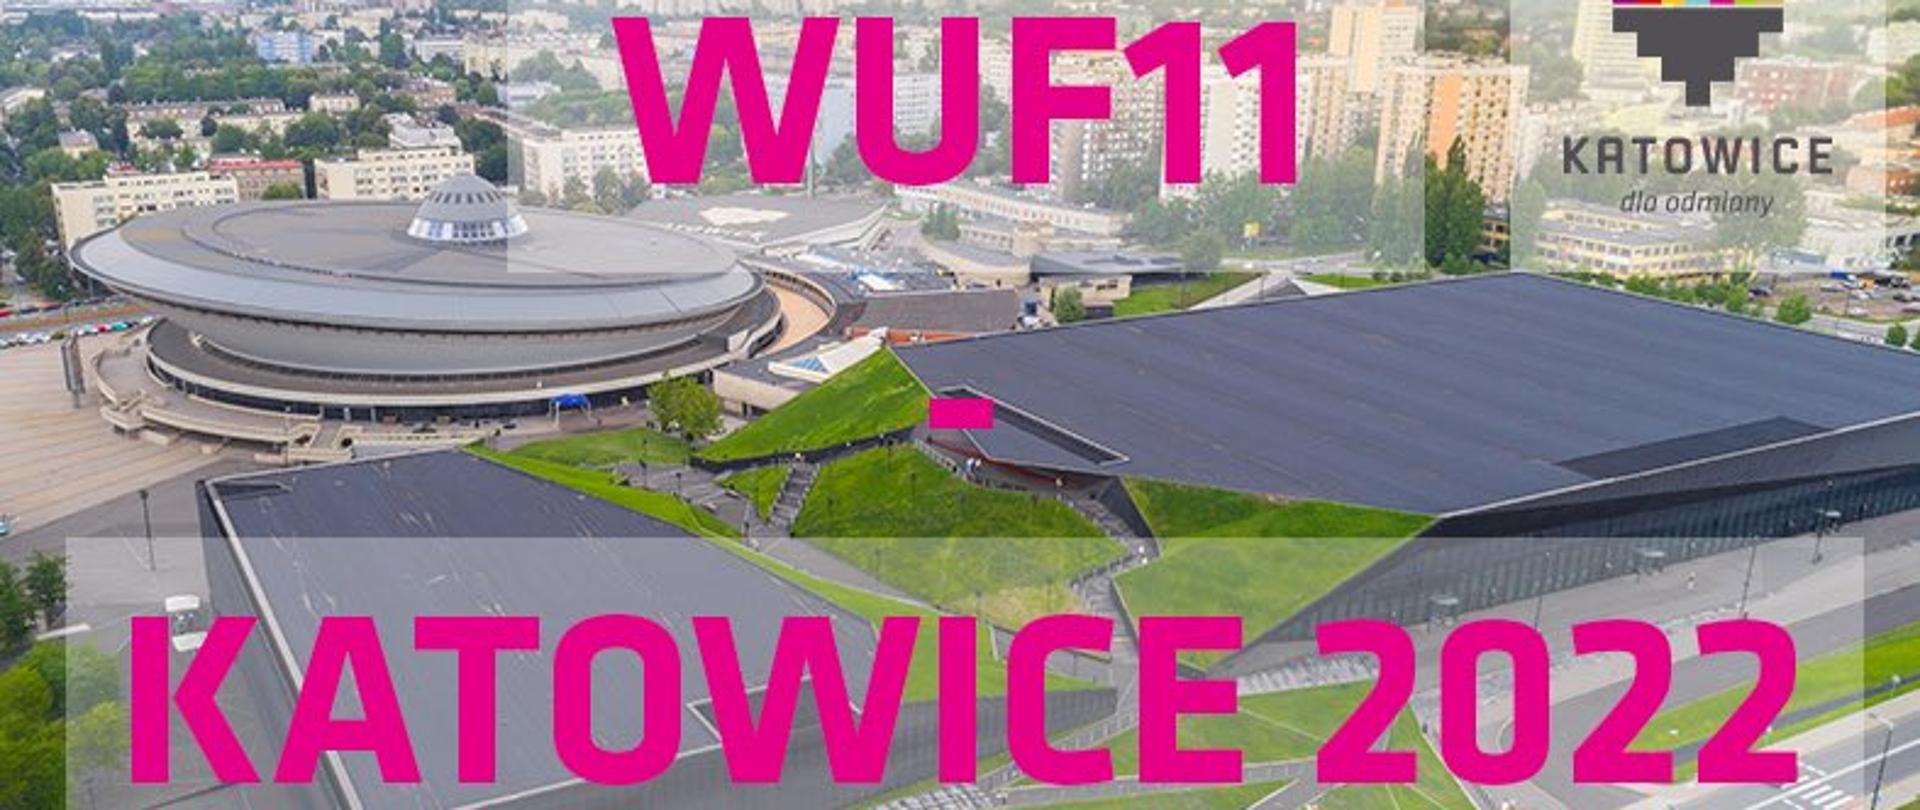 grafika z napisem Katowice 2022 - WUF11 (11. Światowe Forum Miejskie)